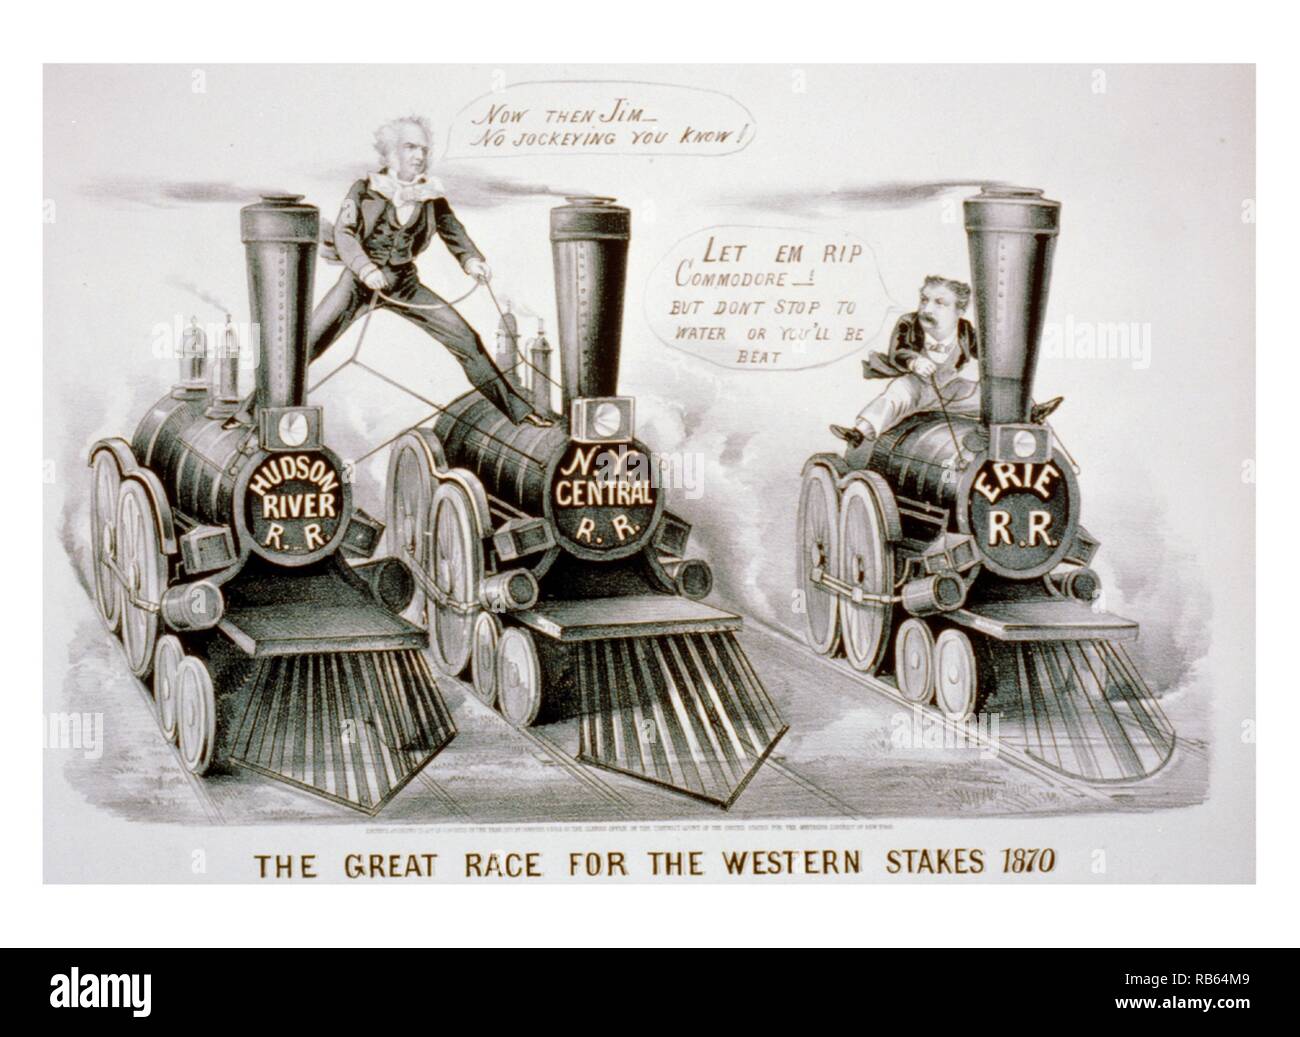 Litografia di creato da Currier e Ives raffigura Cornelius Vanderbilt e James Fisk in una gara per il controllo di New York's Guide. Per tutto il 1868 e 1869, i due uomini avevano combattuto per il controllo dell'Erie Railroad. (Vedere anche "la statua svelata,' n. 1869-1). Qui, Vanderbilt a cavallo della sua due ferrovie, il 'Fiume Hudson R.R.' e il 'New York Central R.R.", ammonendo il suo concorrente, 'Ora poi Jim--no Jockeying sapete!" Il nano come Fisk, seduta a cavallo del 'Erie R.R.", risponde, "Let em rip Commodore!--ma non si fermano ad acqua o sarai battuto." datato 1870 Foto Stock